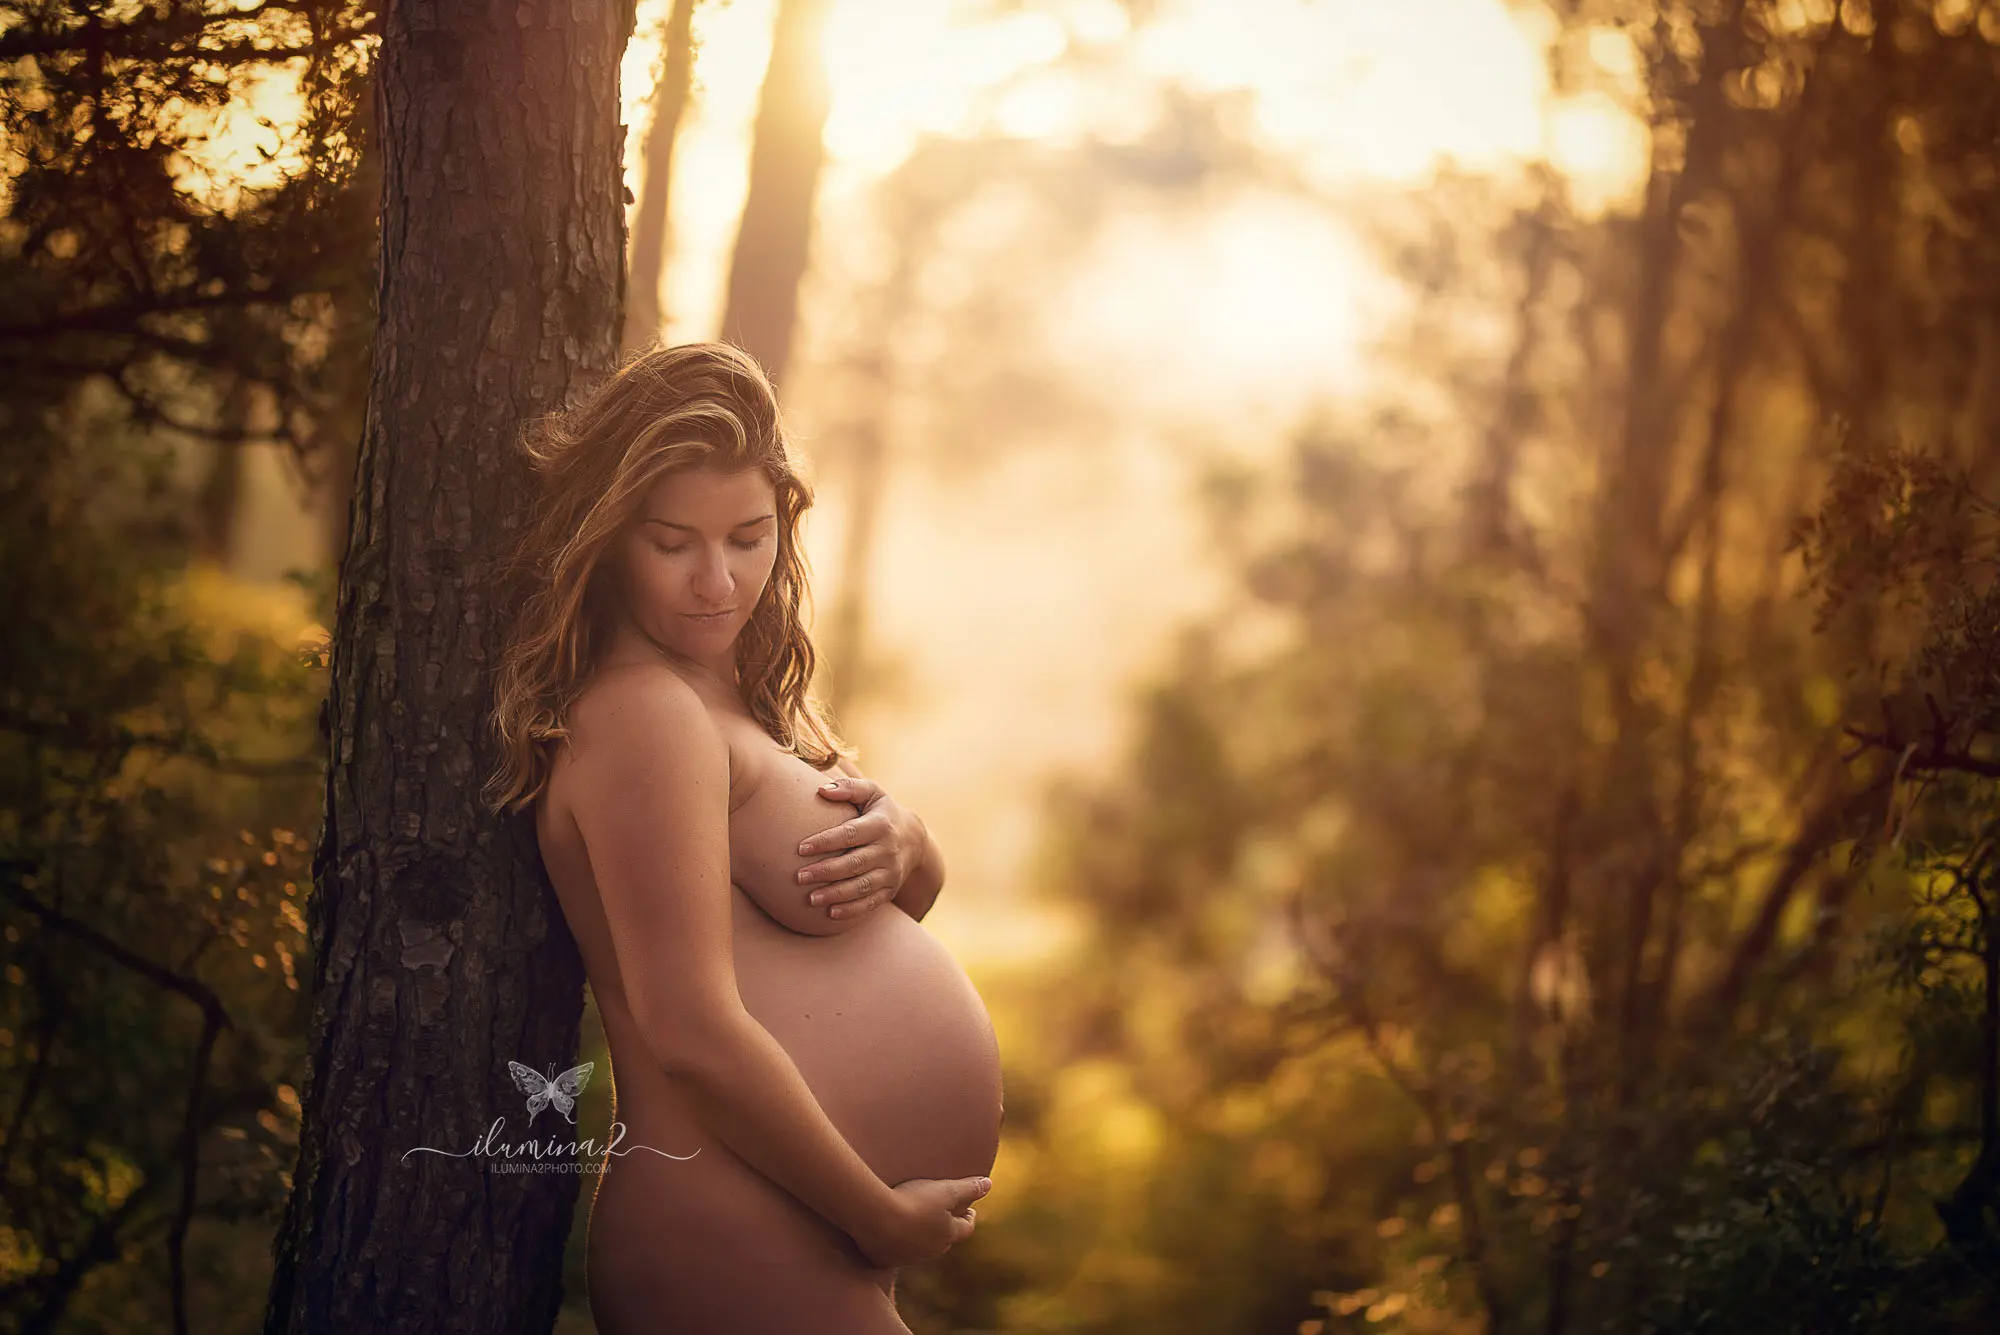 Sesión de fotos para embarazada. Reportaje fotográfico de embarazo al atardecer en Barcelona.